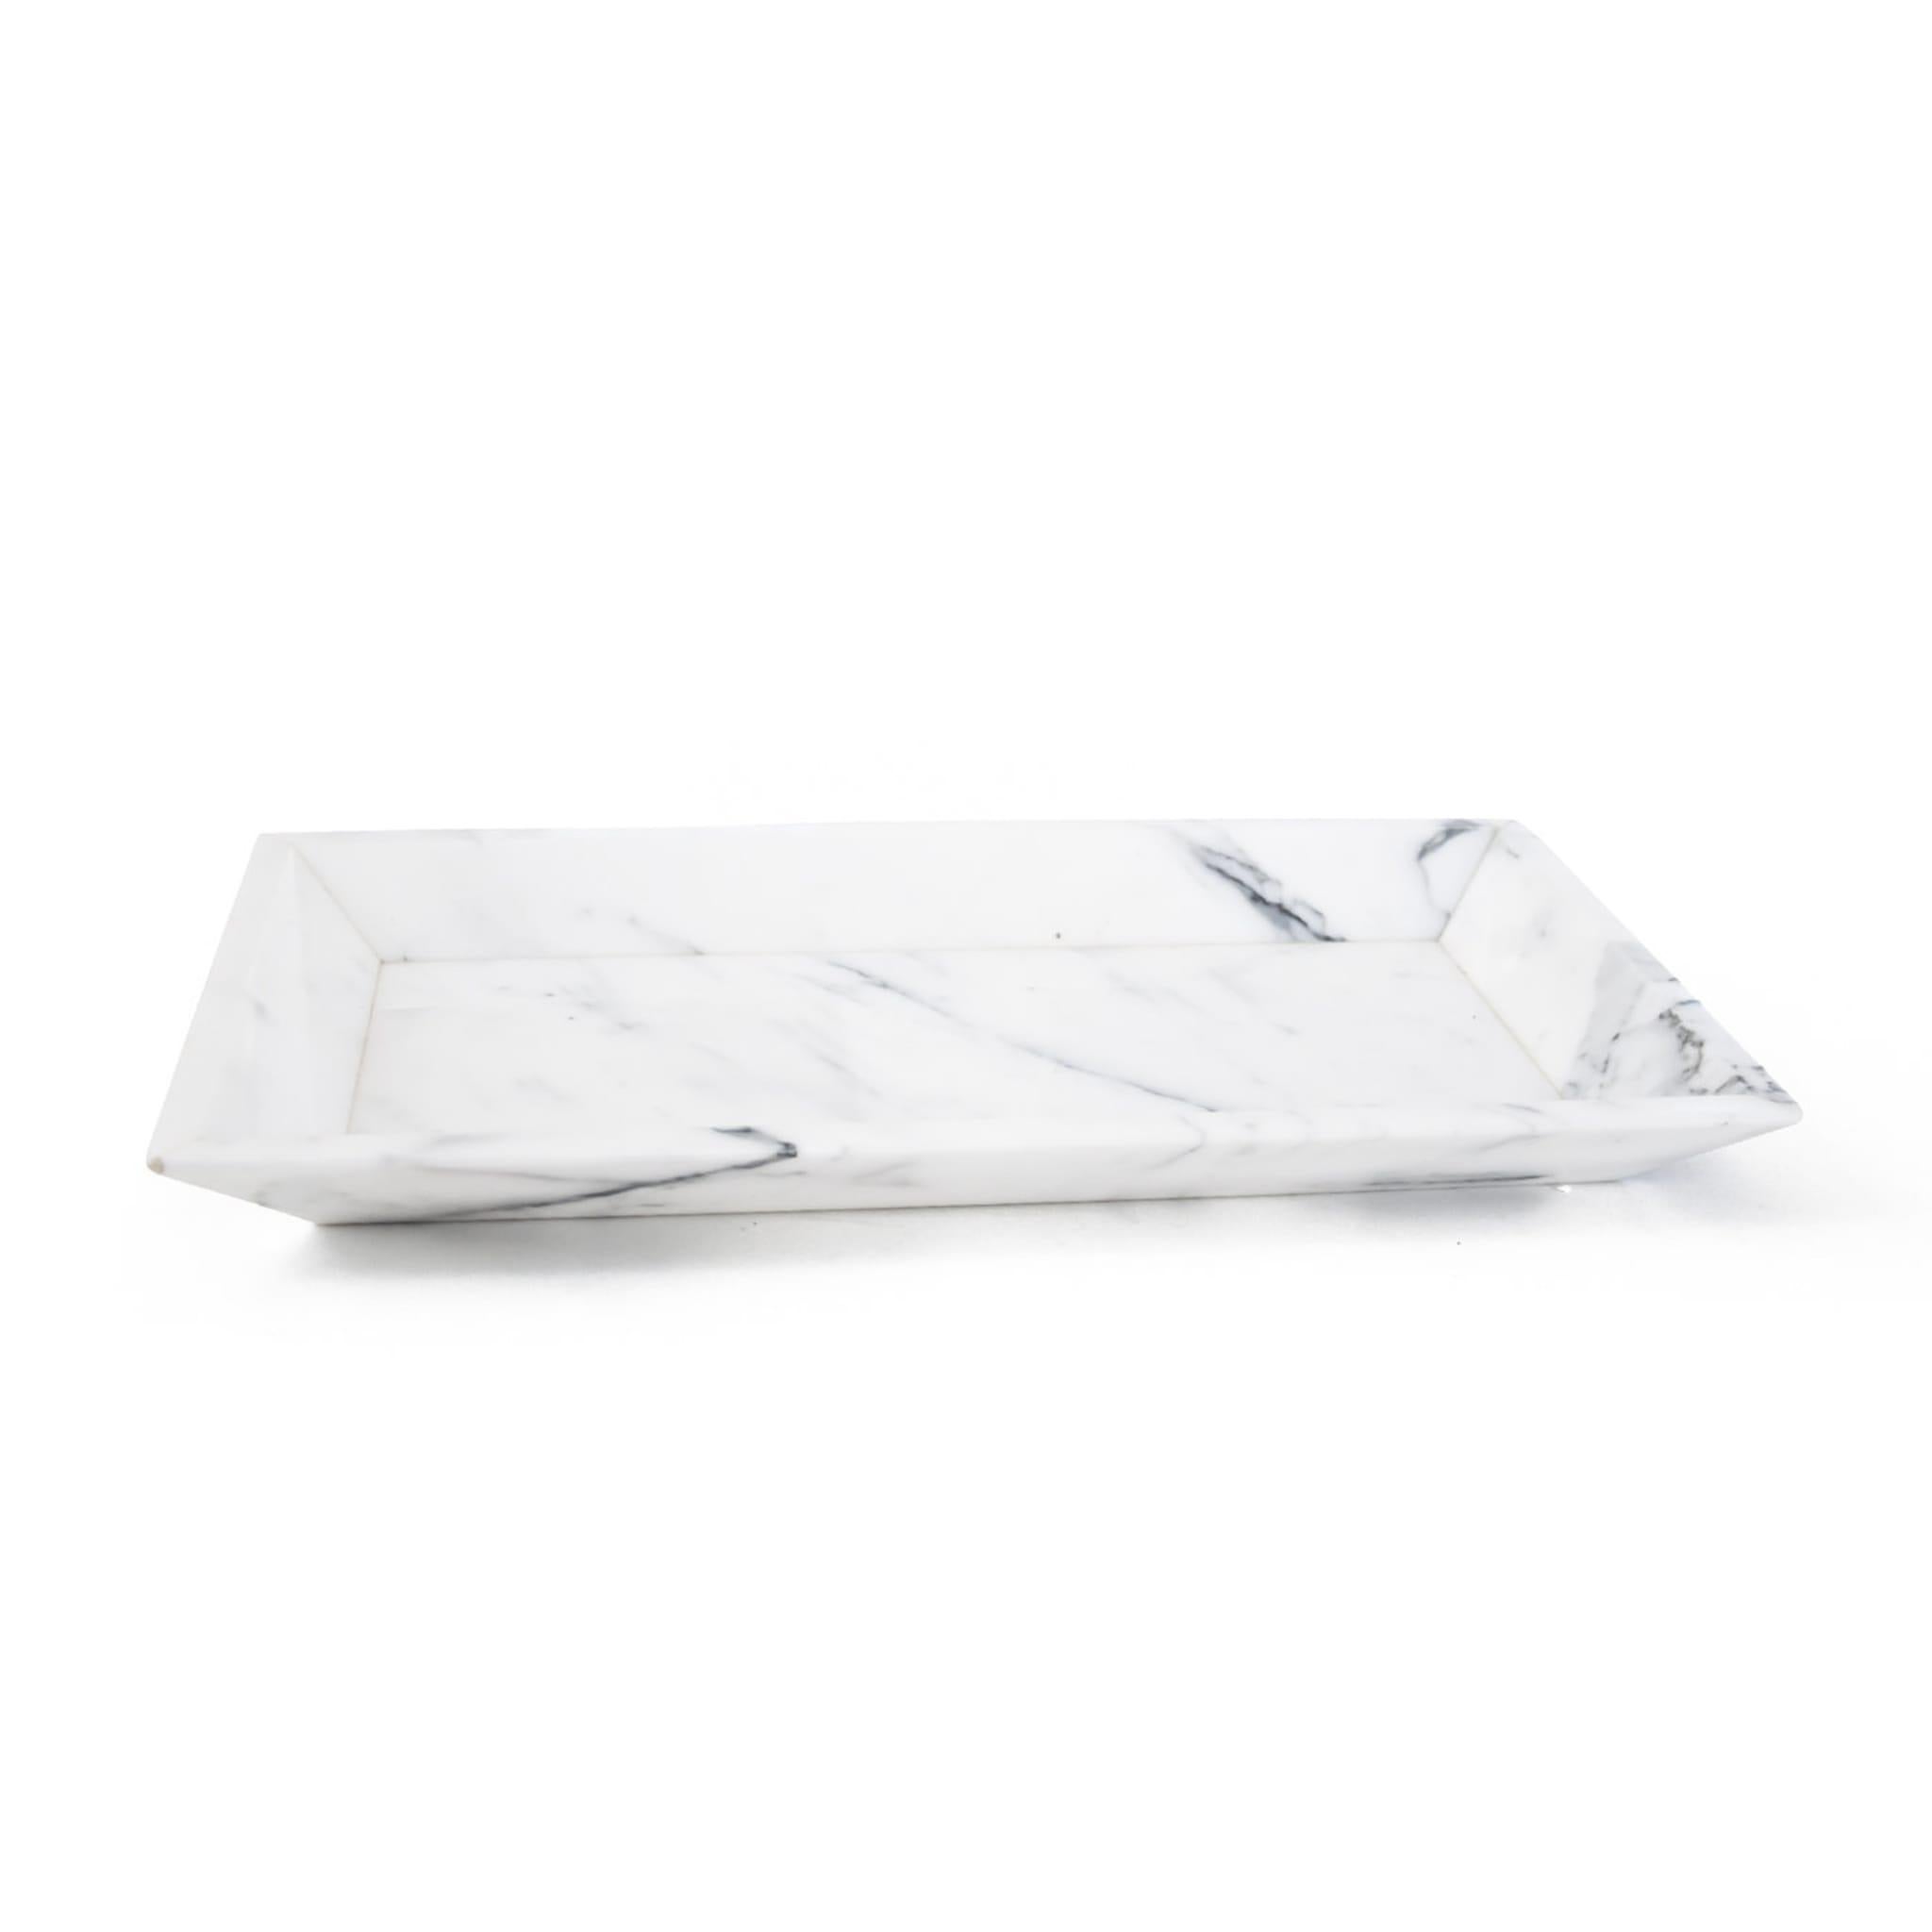 Dieses rechteckige Tablett aus Carrara-Marmor, das Funktionalität und Ästhetik vereint, ist ein unverzichtbarer Tischartikel, der durch sein schlichtes Design besticht. Die charakteristische graue Maserung, die seine Oberfläche ziert, ist eine